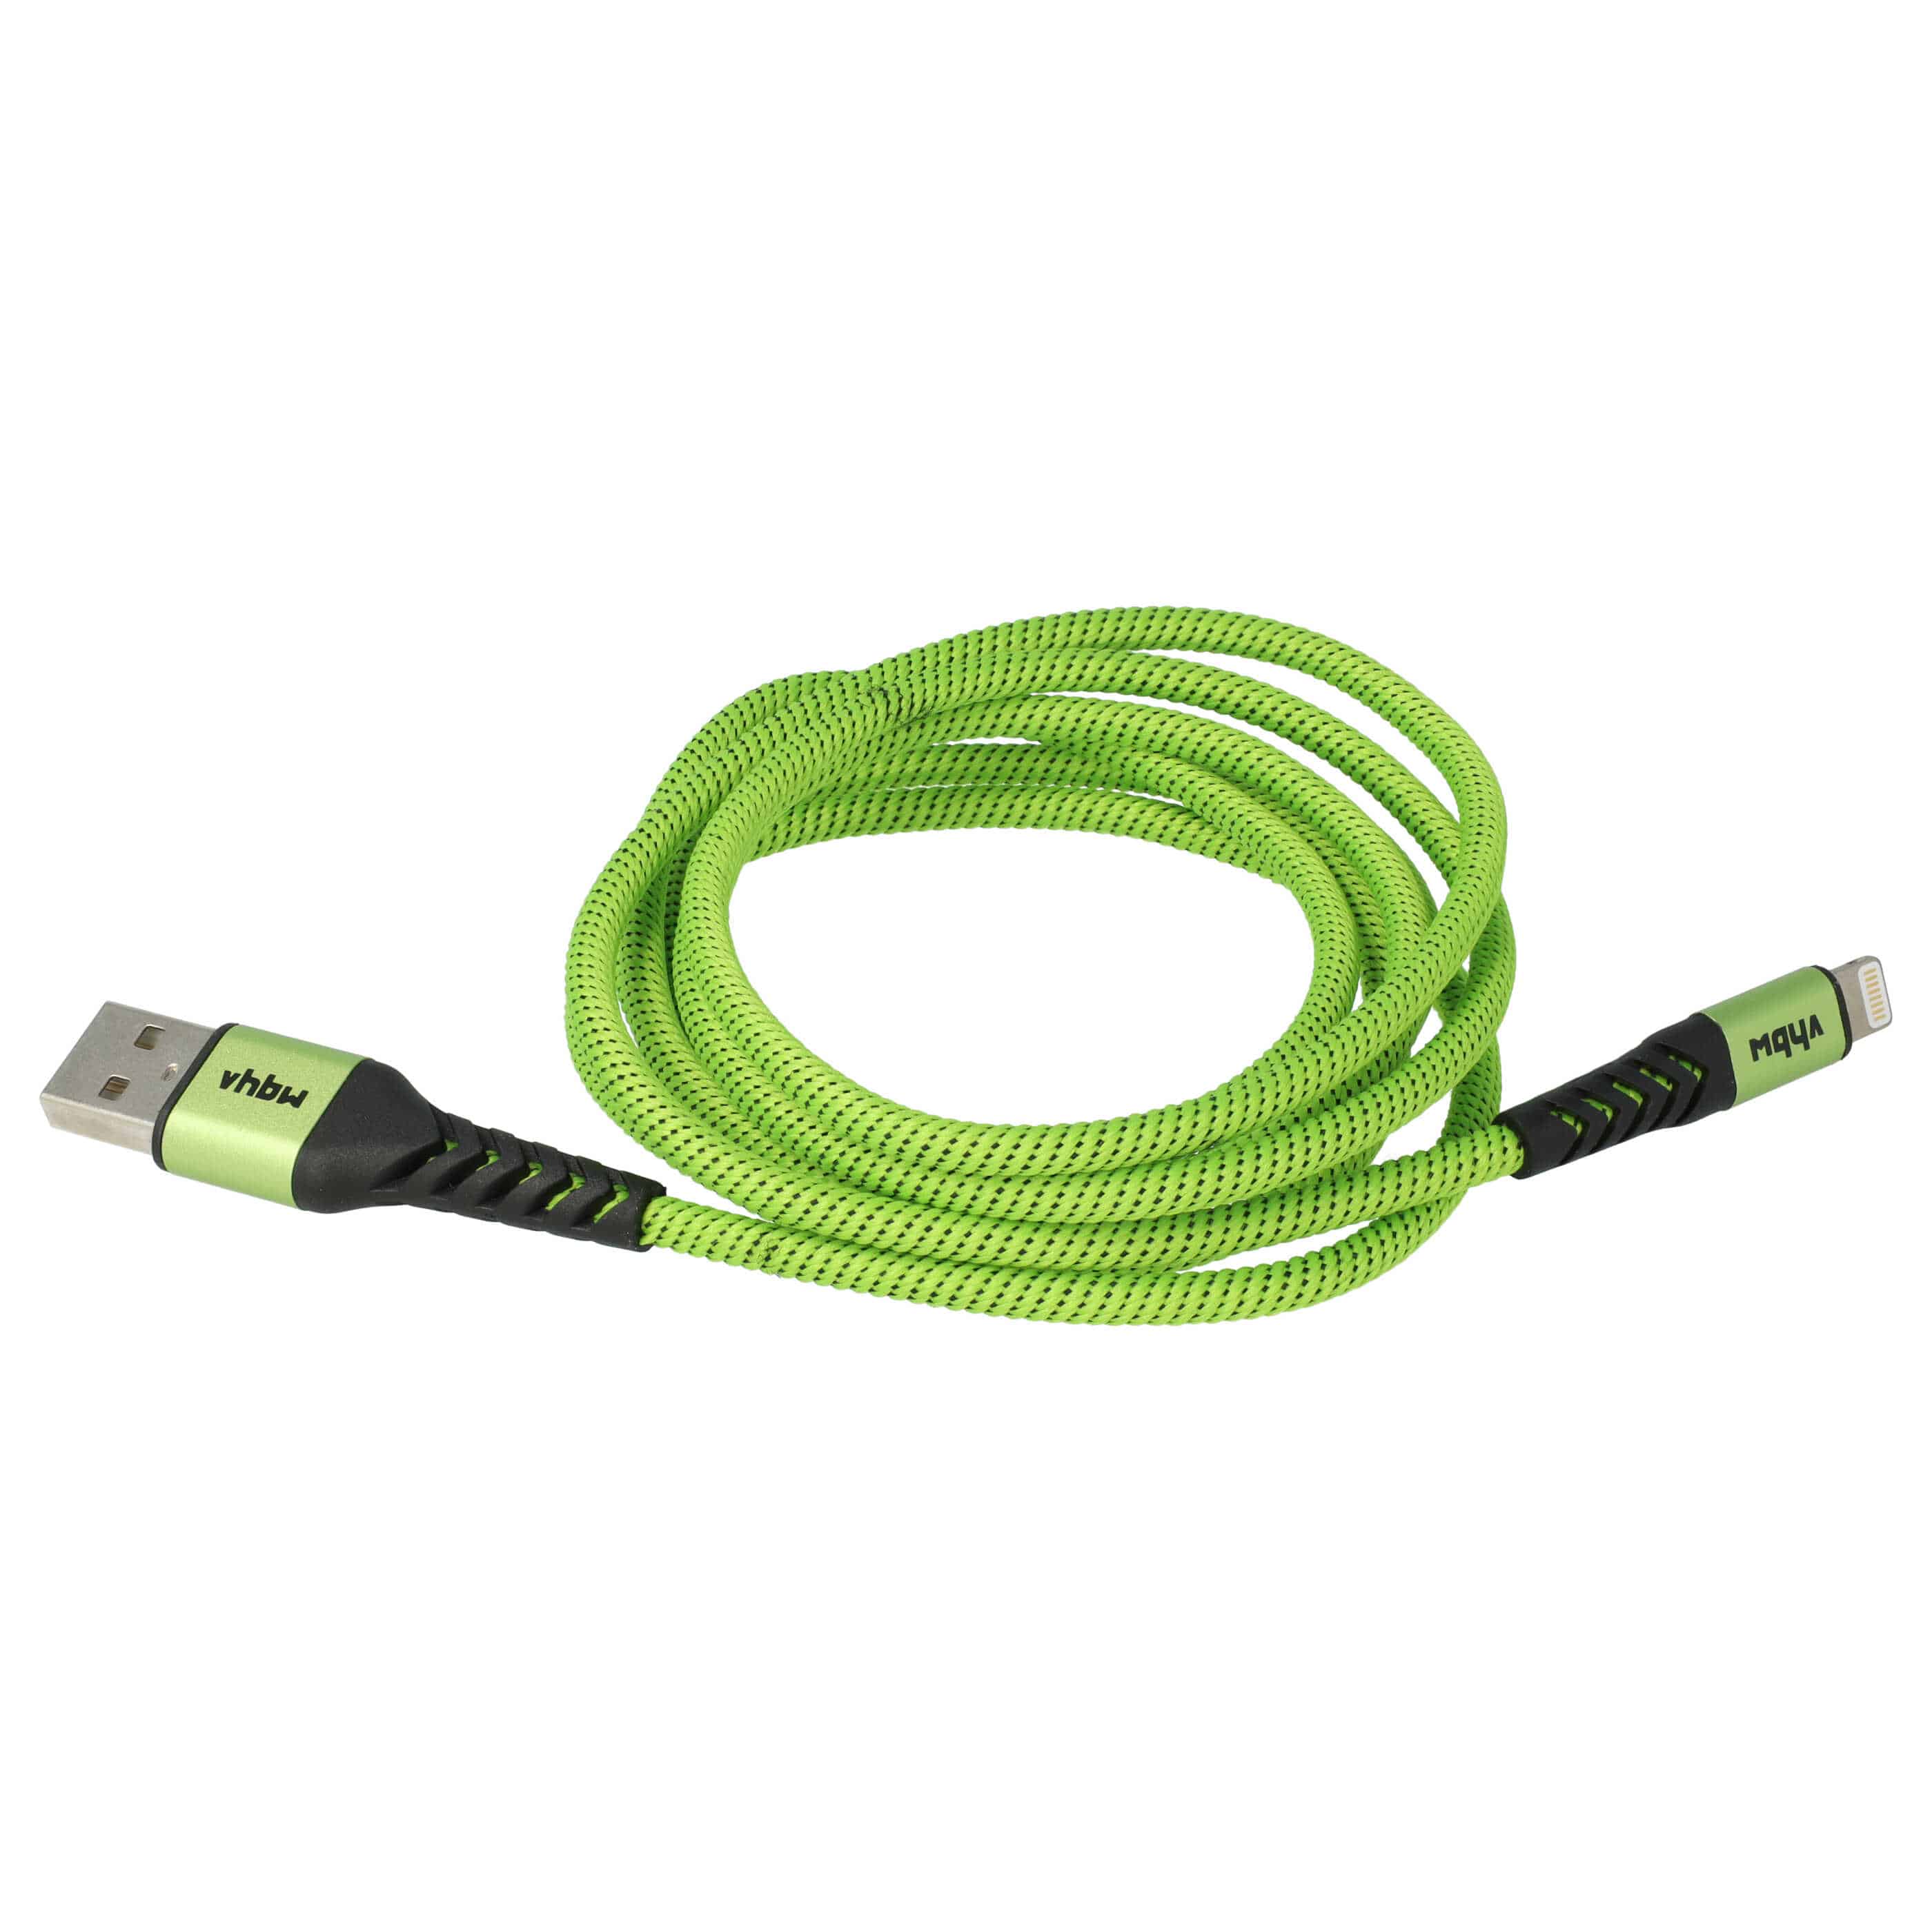 Kabel Lightning USB A do urządzeń iOS 1. generacji - czarny / zielony, 180 cm 